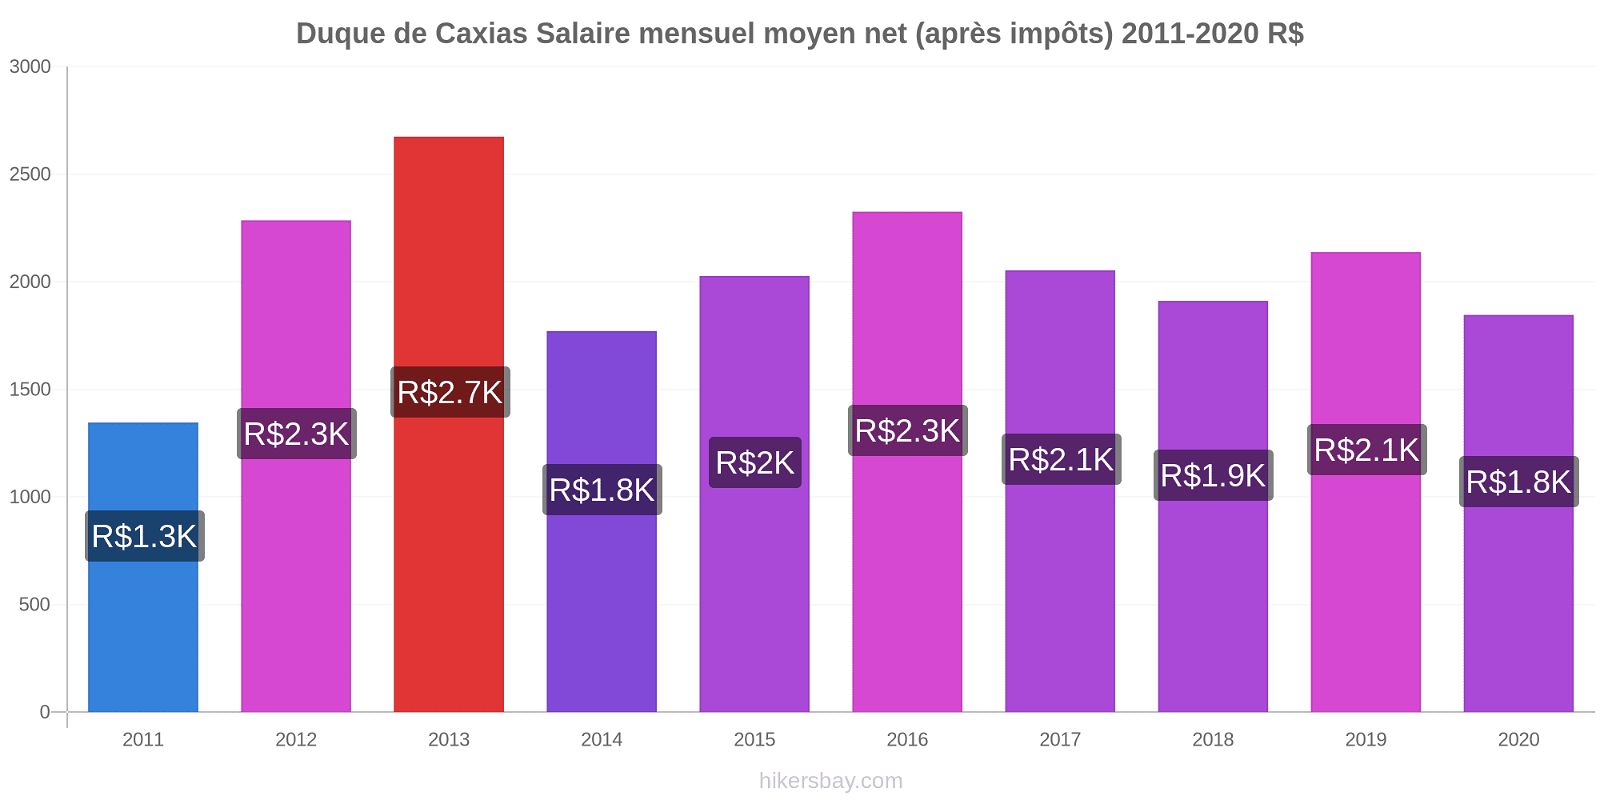 Duque de Caxias changements de prix Salaire mensuel Net (après impôts) hikersbay.com